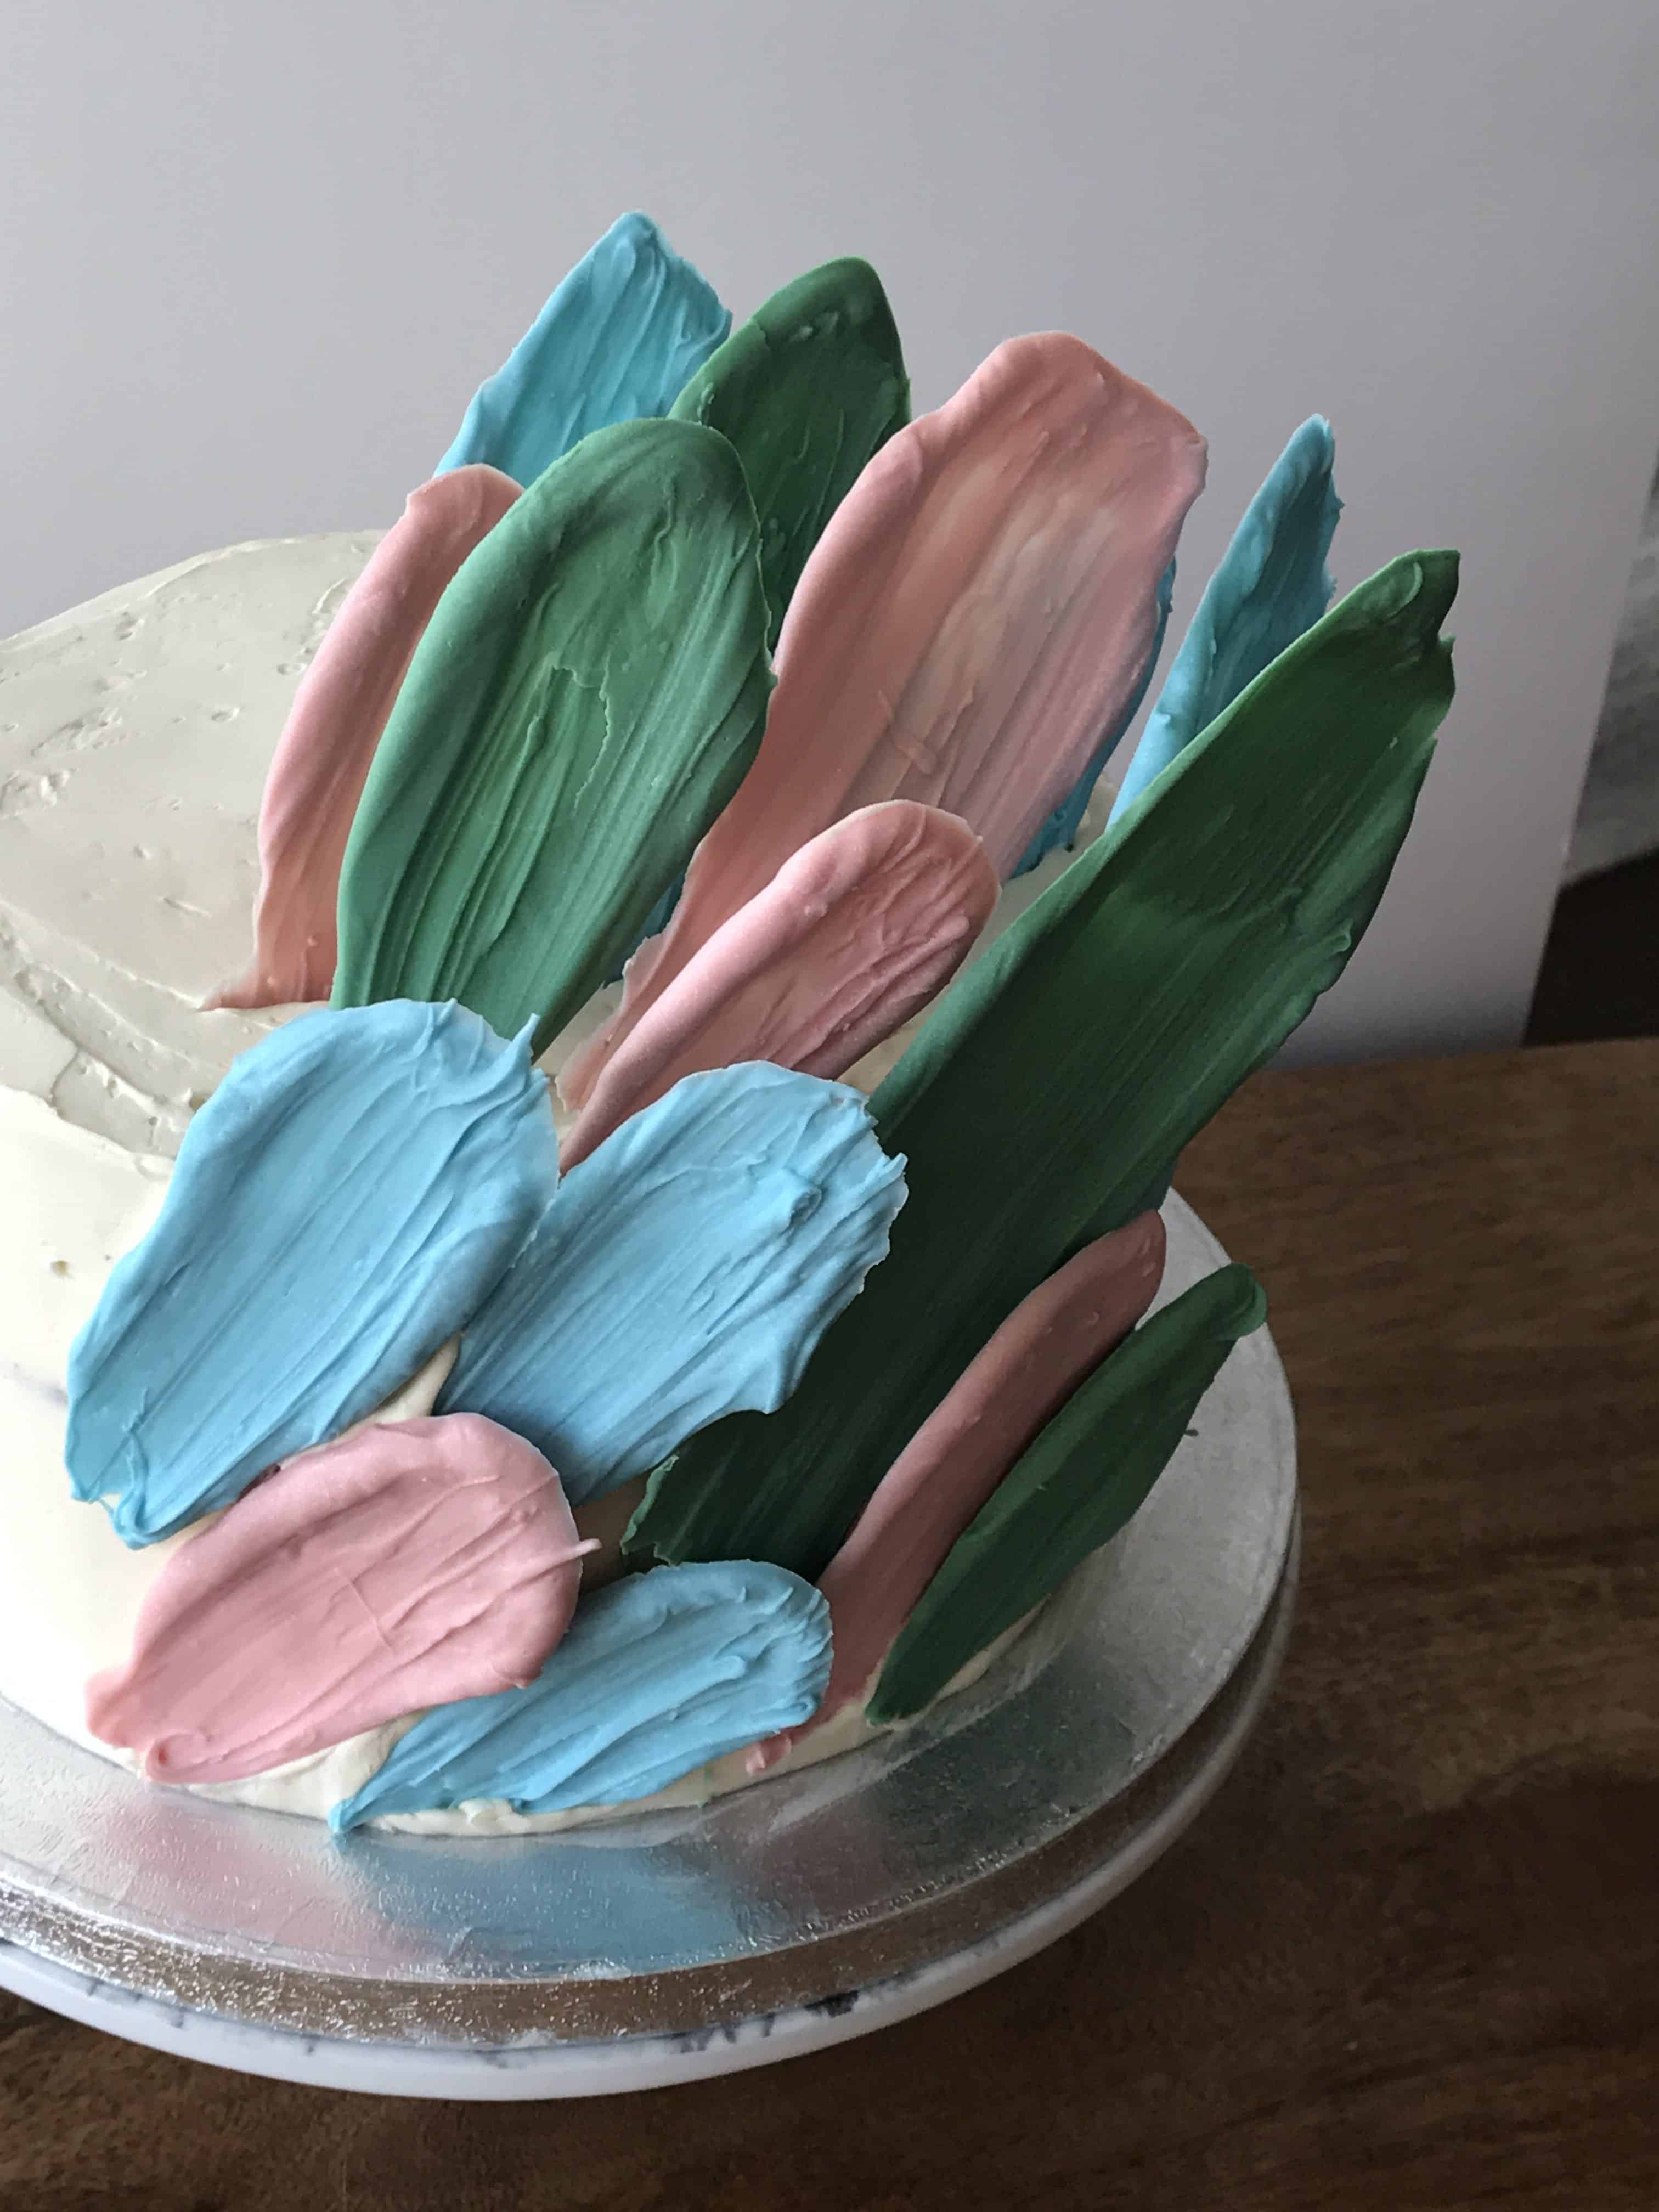 brushstroke layer cake